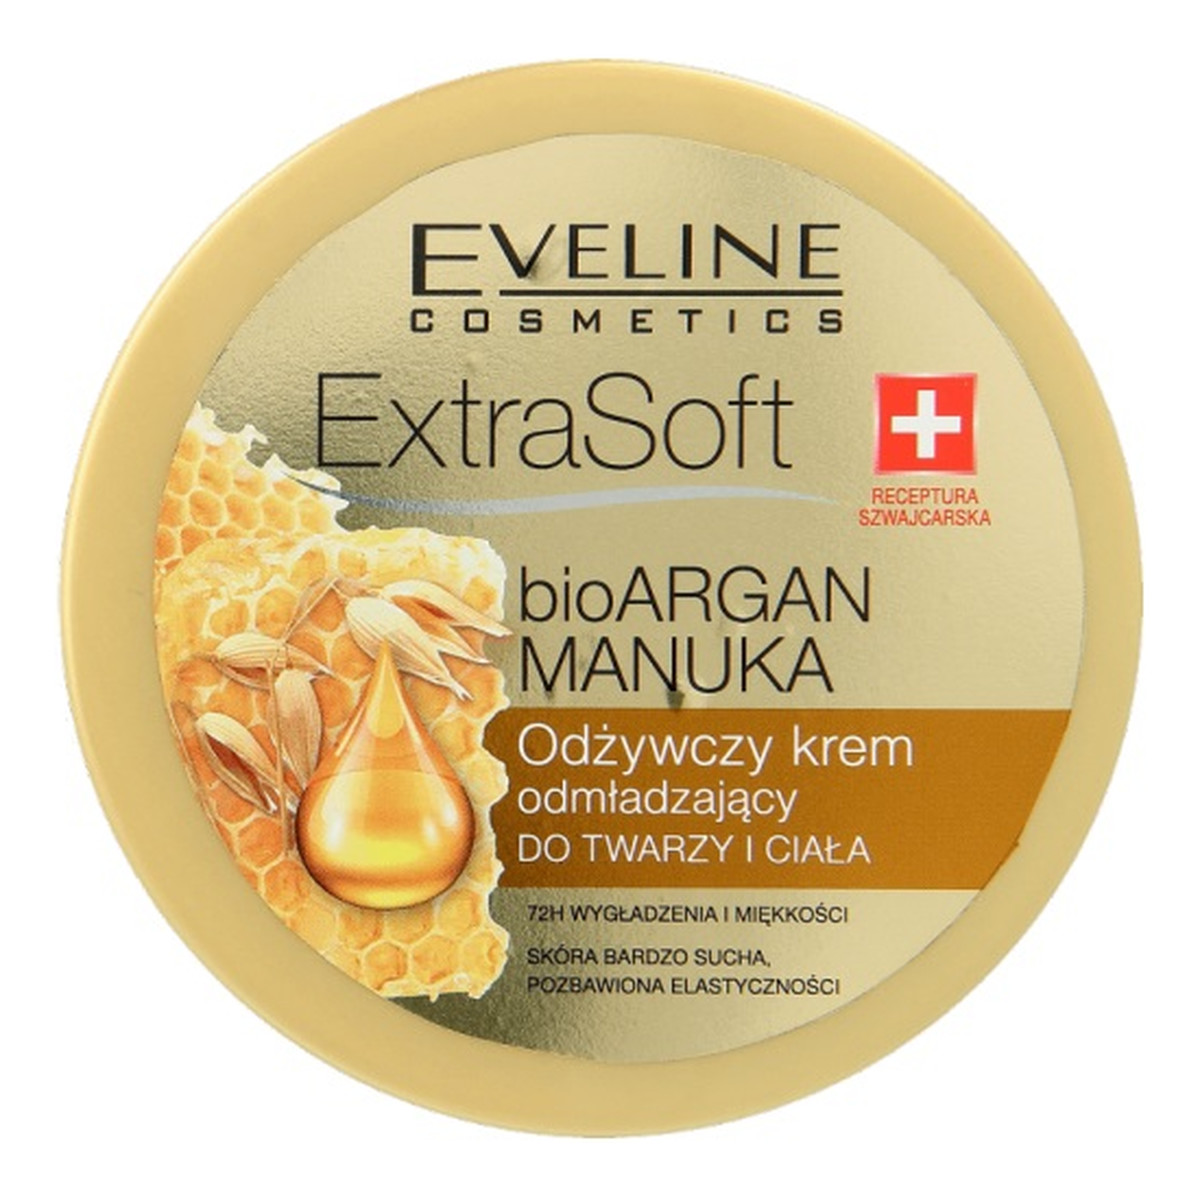 Eveline Extra Soft Odżywczy krem odmładzający do twarzy i ciała z bio Arganem i olejkiem Manuka 175ml